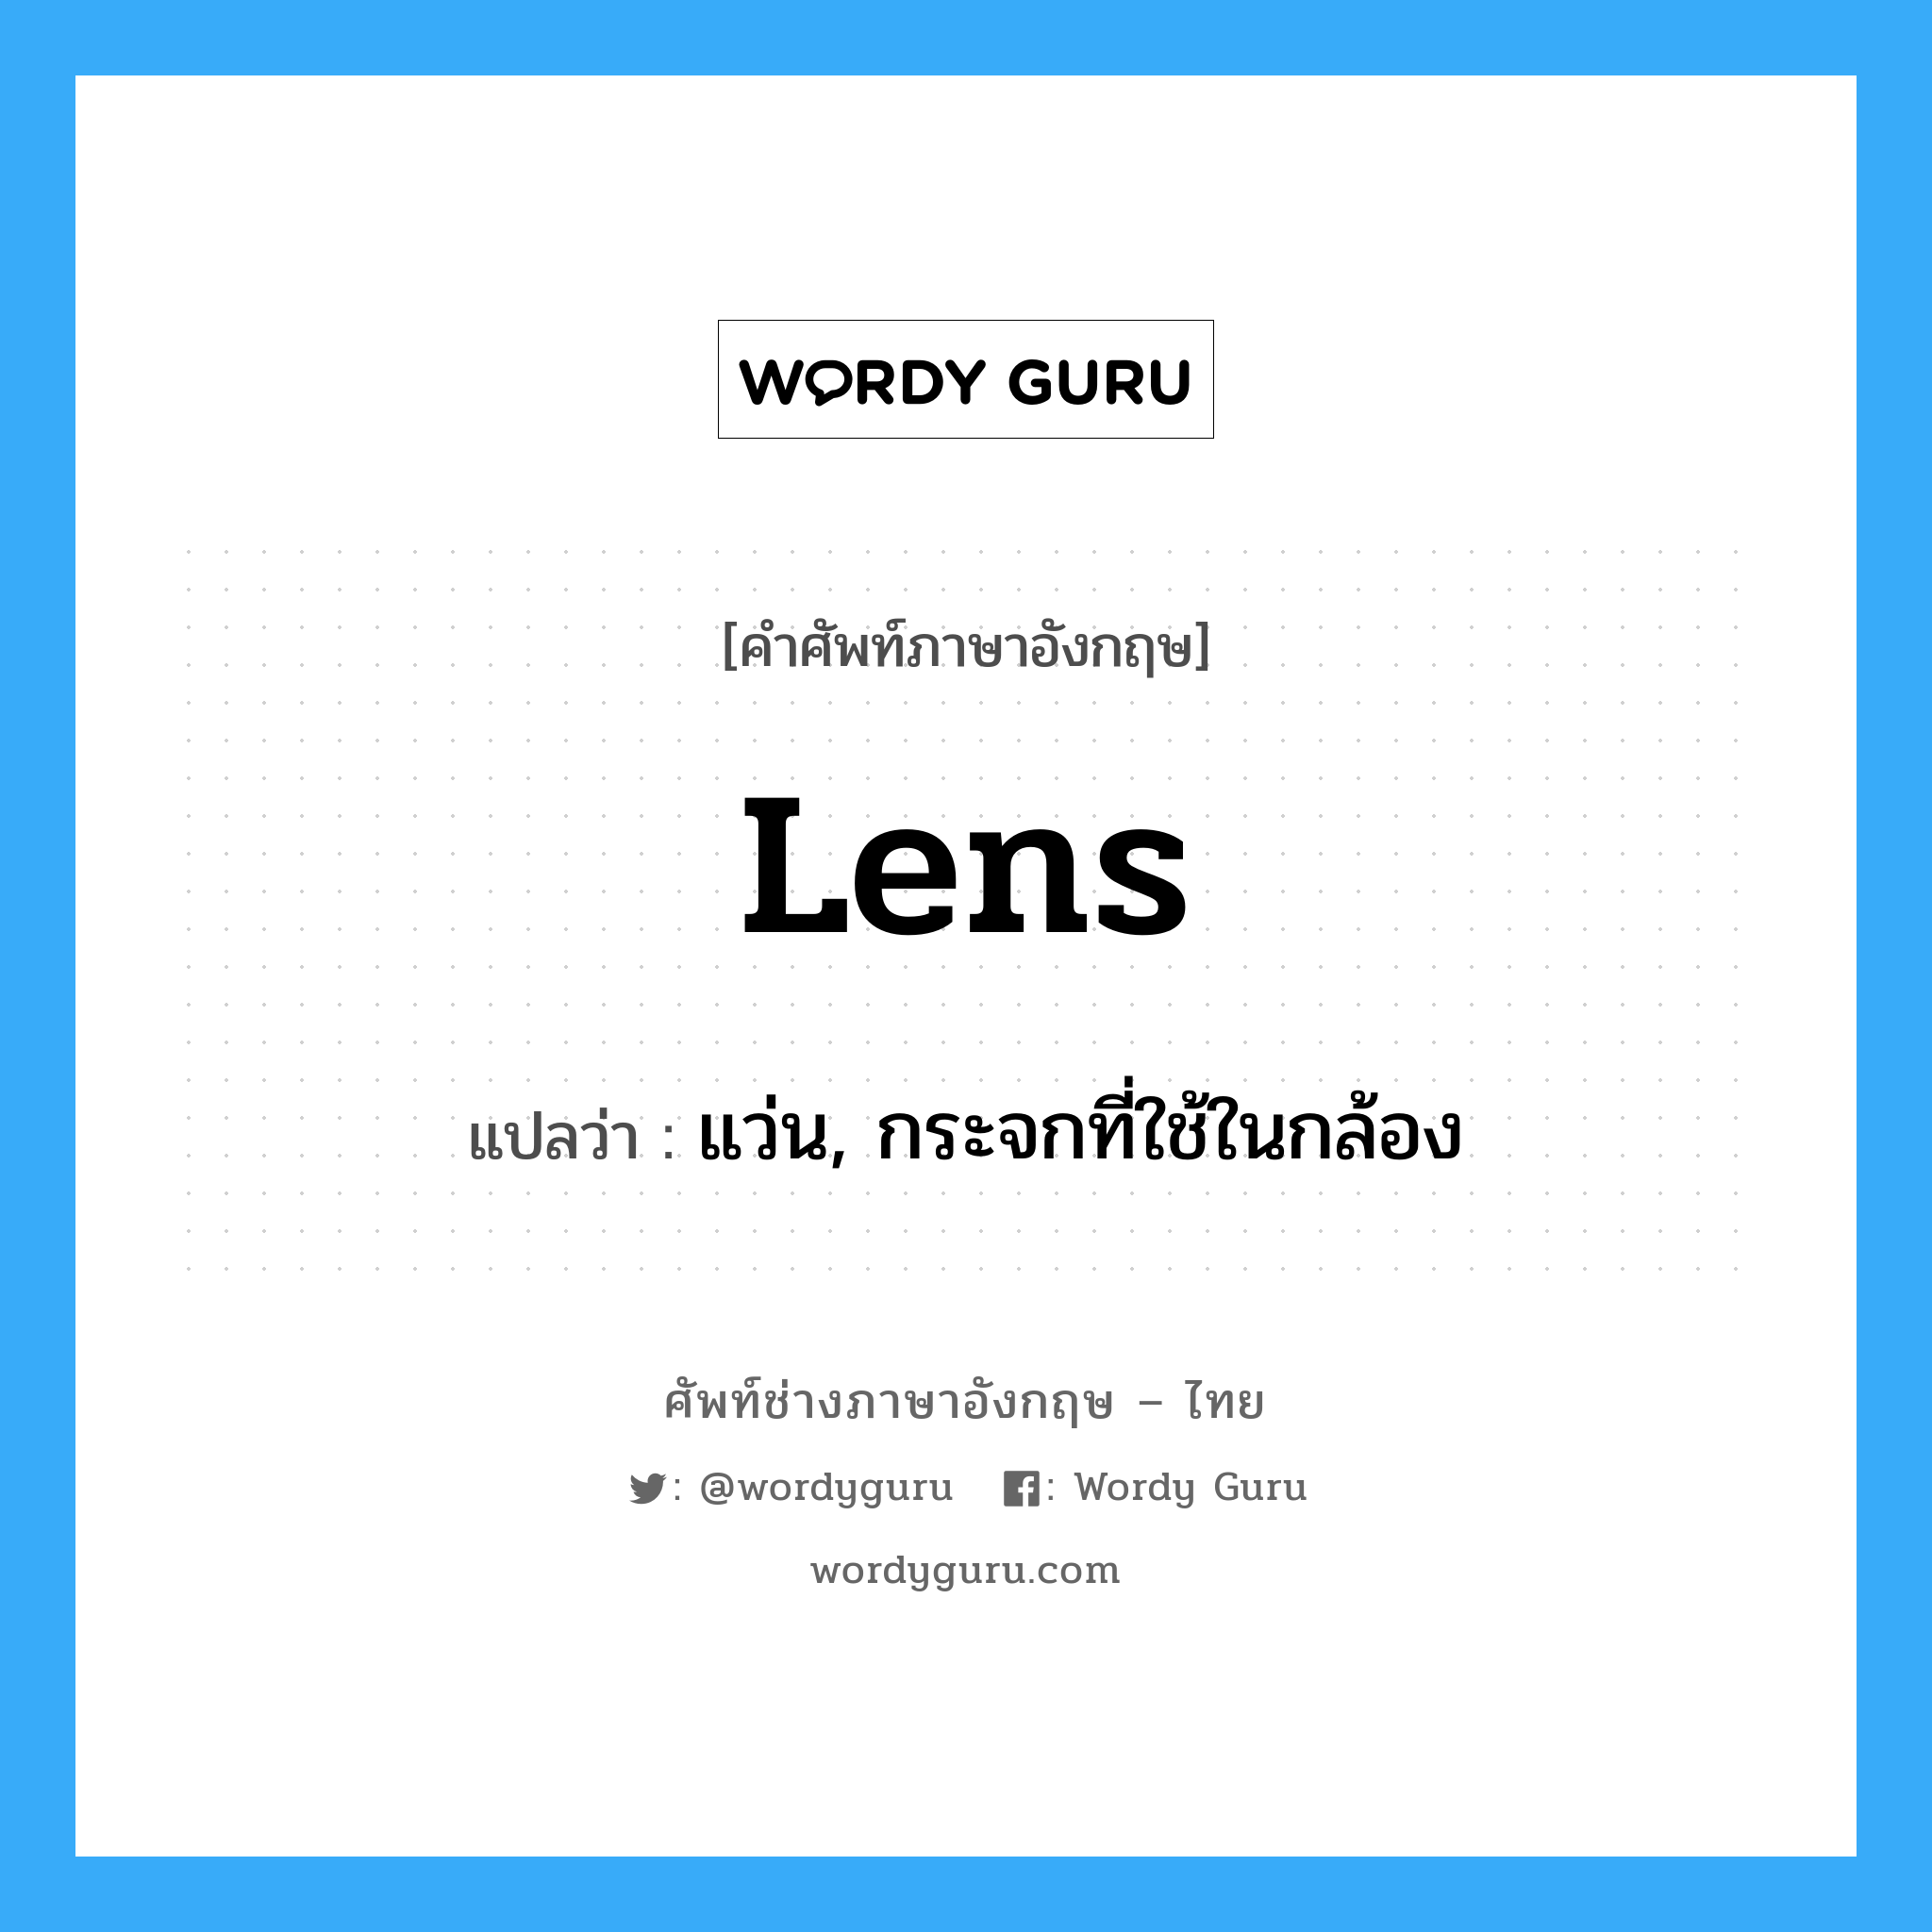 แว่น, กระจกที่ใช้ในกล้อง ภาษาอังกฤษ?, คำศัพท์ช่างภาษาอังกฤษ - ไทย แว่น, กระจกที่ใช้ในกล้อง คำศัพท์ภาษาอังกฤษ แว่น, กระจกที่ใช้ในกล้อง แปลว่า lens